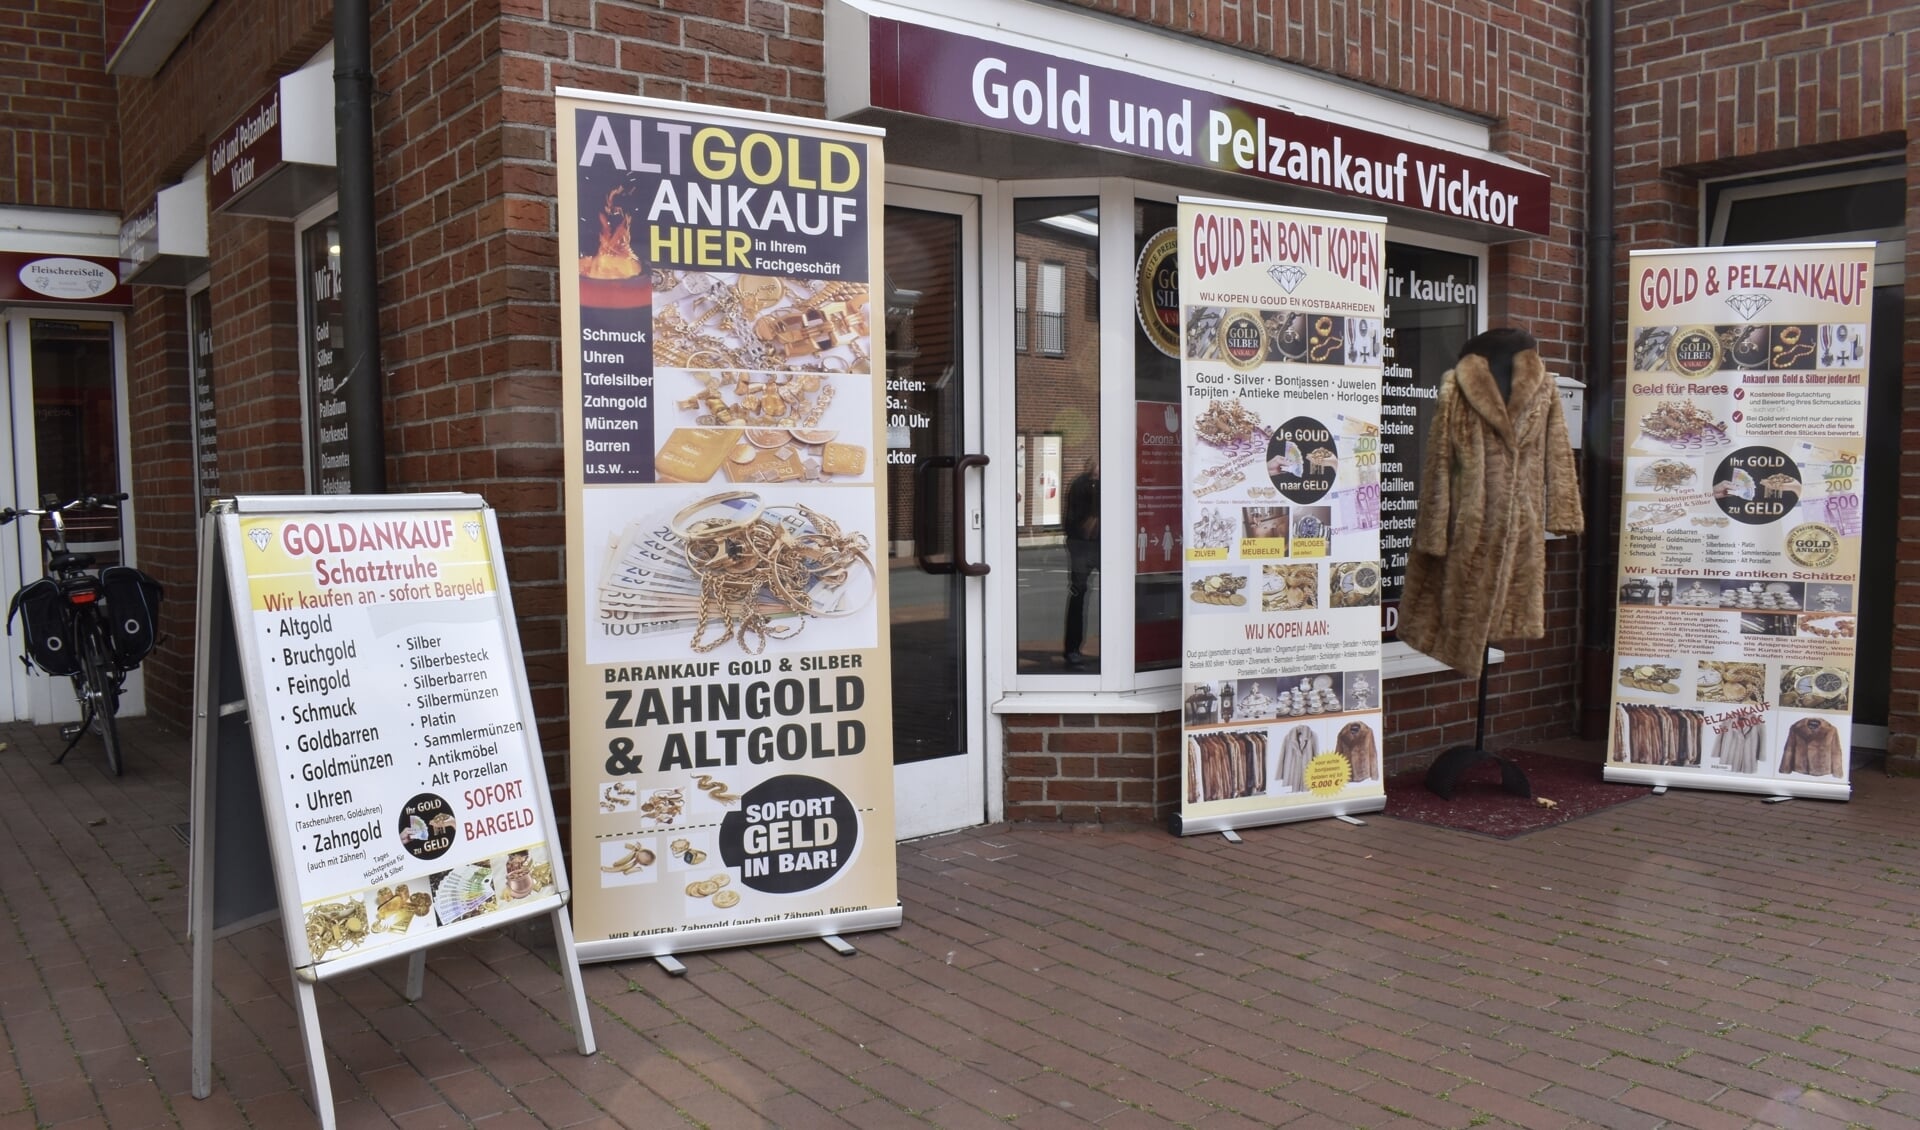 Bij Goudaankoop worden hoge prijzen betaald, niet alleen in Enschede maar ook in de vestiging in Gronau-Epe bijvoorbeeld.